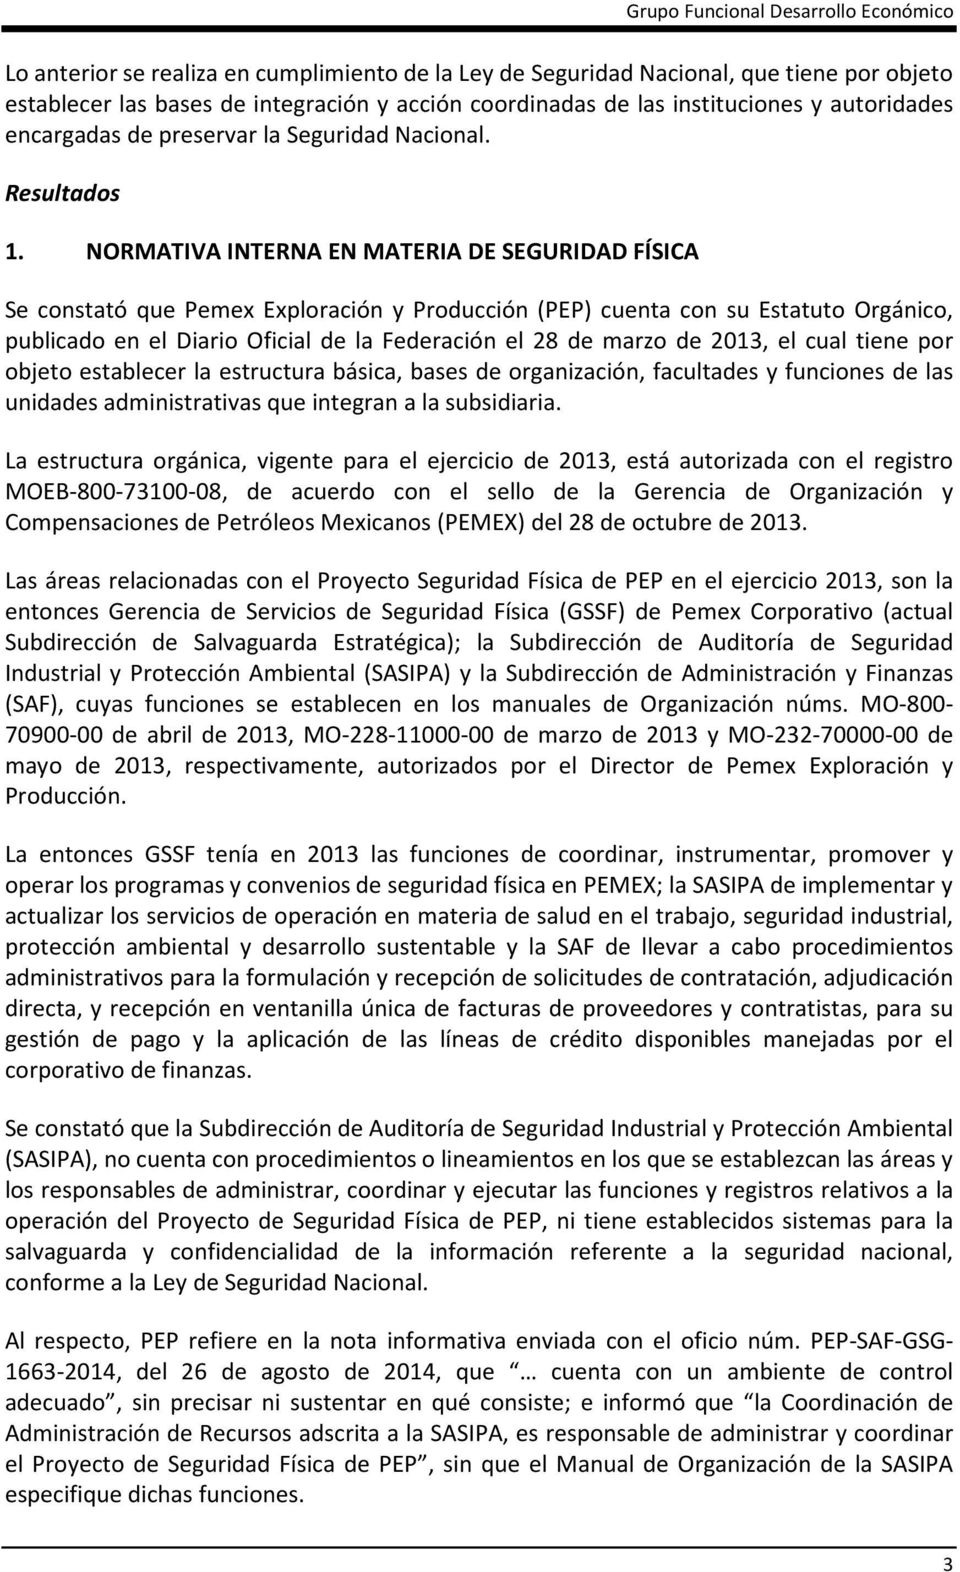 NORMATIVA INTERNA EN MATERIA DE SEGURIDAD FÍSICA Se constató que Pemex Exploración y Producción (PEP) cuenta con su Estatuto Orgánico, publicado en el Diario Oficial de la Federación el 28 de marzo